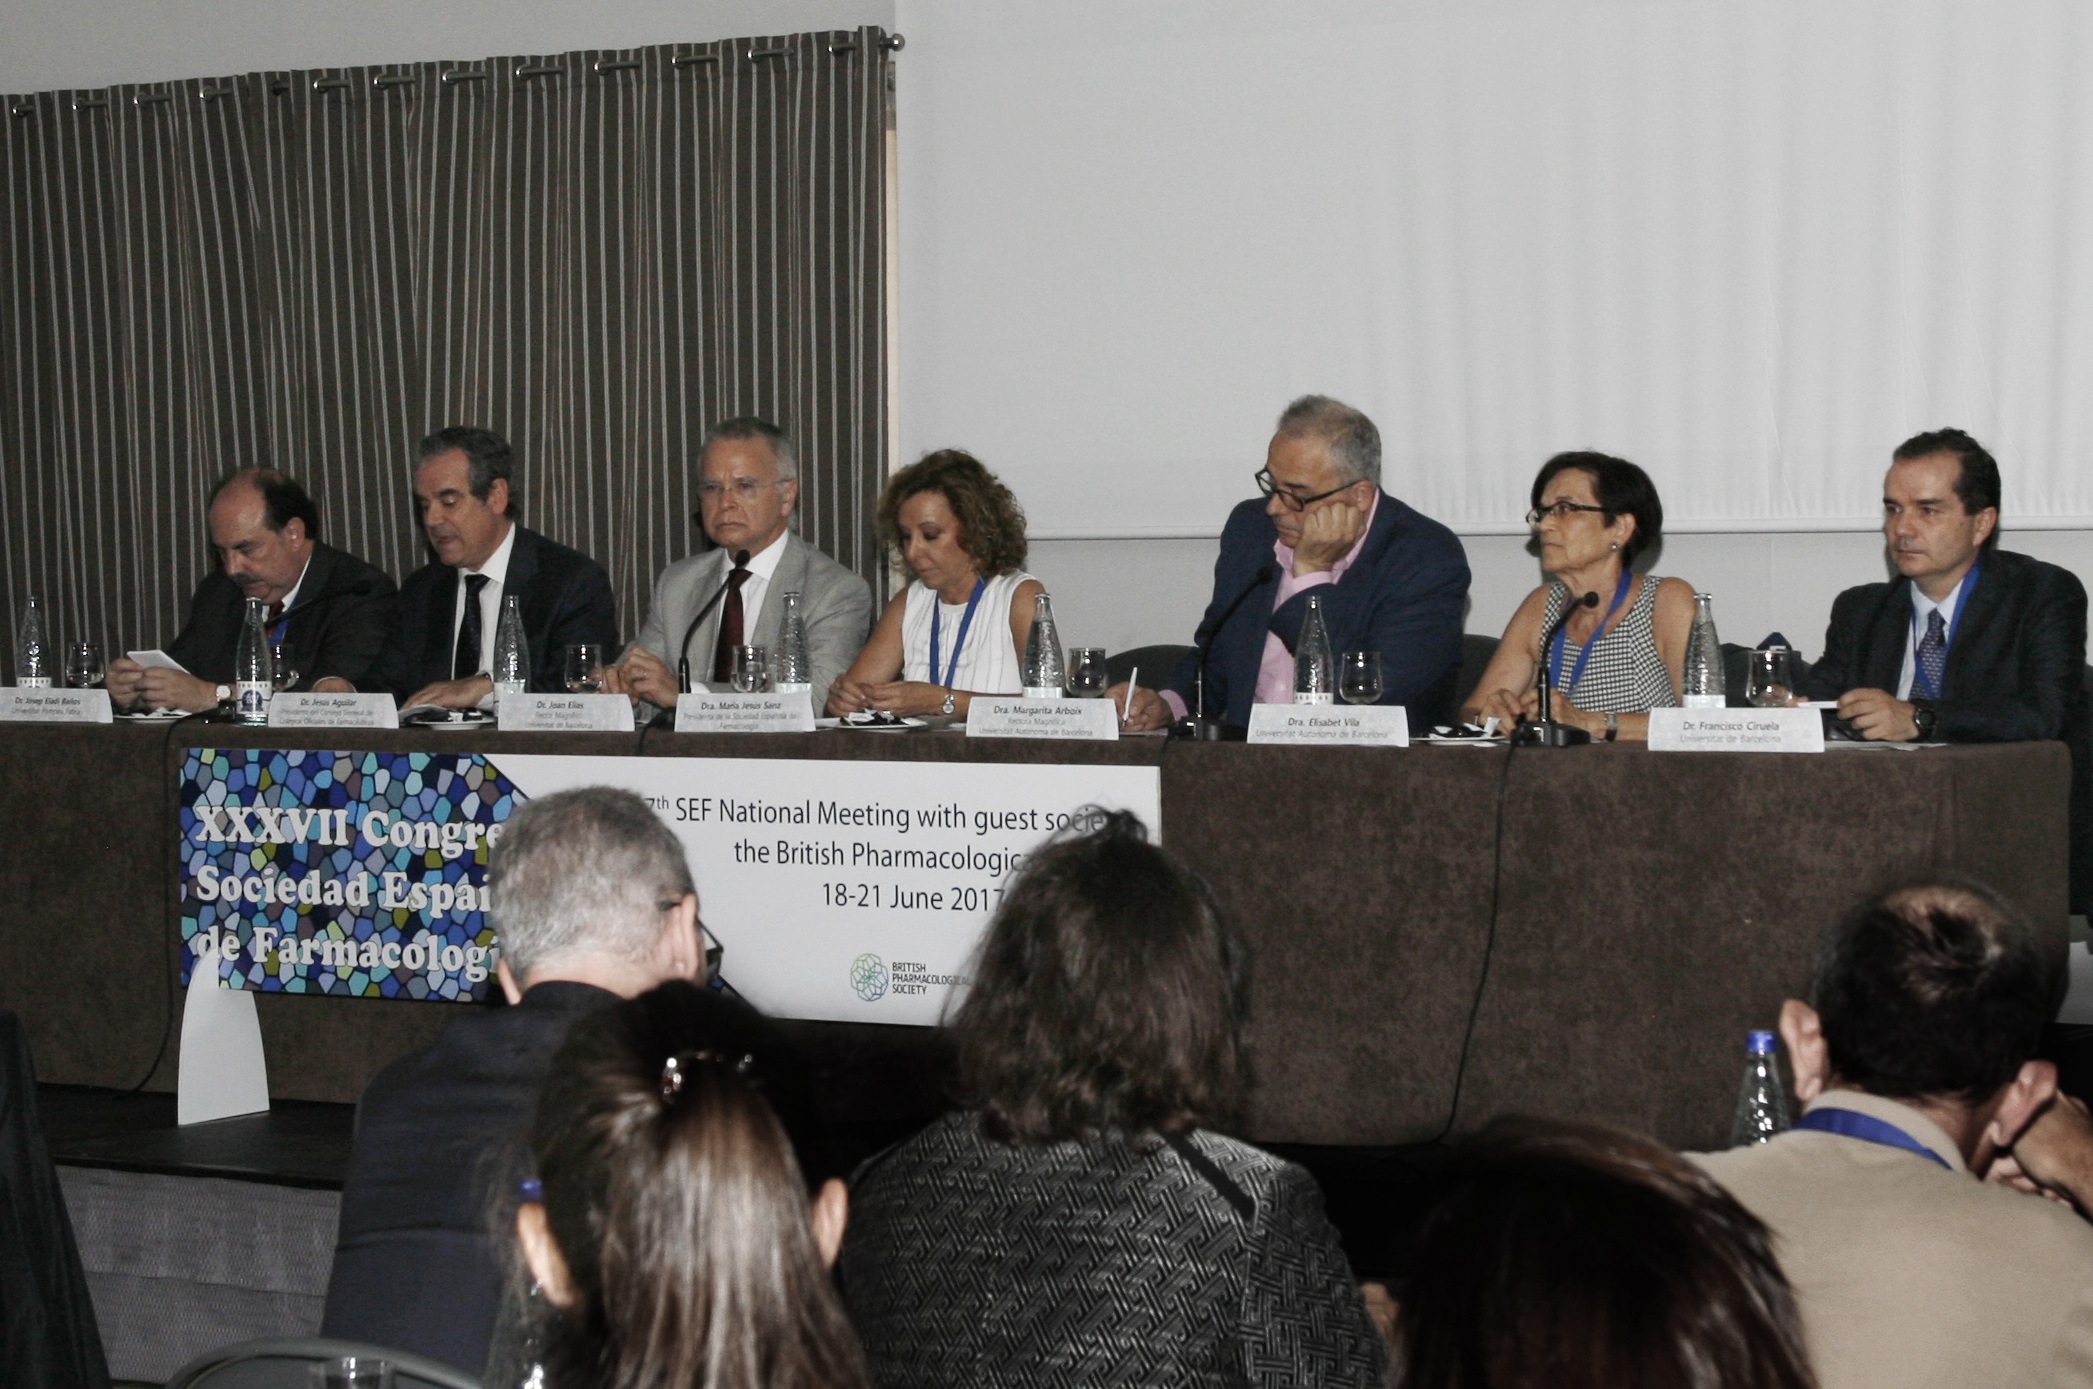 La nova edició del congrés de la SEF es va inaugurar aquest diumenge, 18 de juny, a les 17.30 h, en un acte institucional presidit pel rector de la UB, Joan Elias, i la rectora de la UAB, Margarita Arboix.